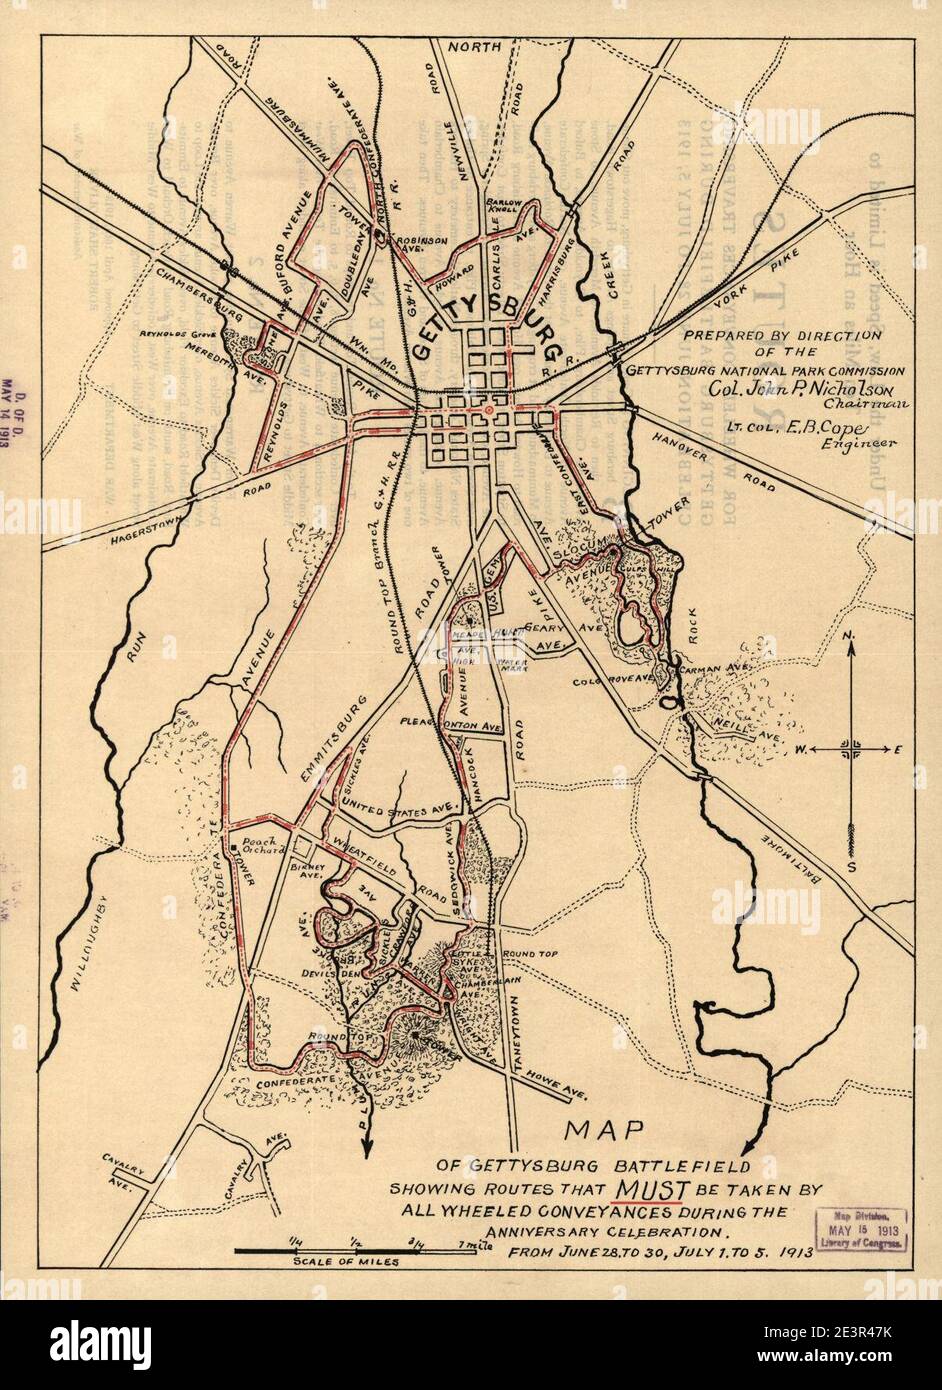 Karte des Schlachtfeldes von Gettysburg, die Routen zeigt, die während der Jubiläumsfeier, vom 28. Juni bis 30. Juni, vom 1. Bis 5. Juli 1913, von allen fahrbaren Transportanlagen genommen werden müssen Stockfoto